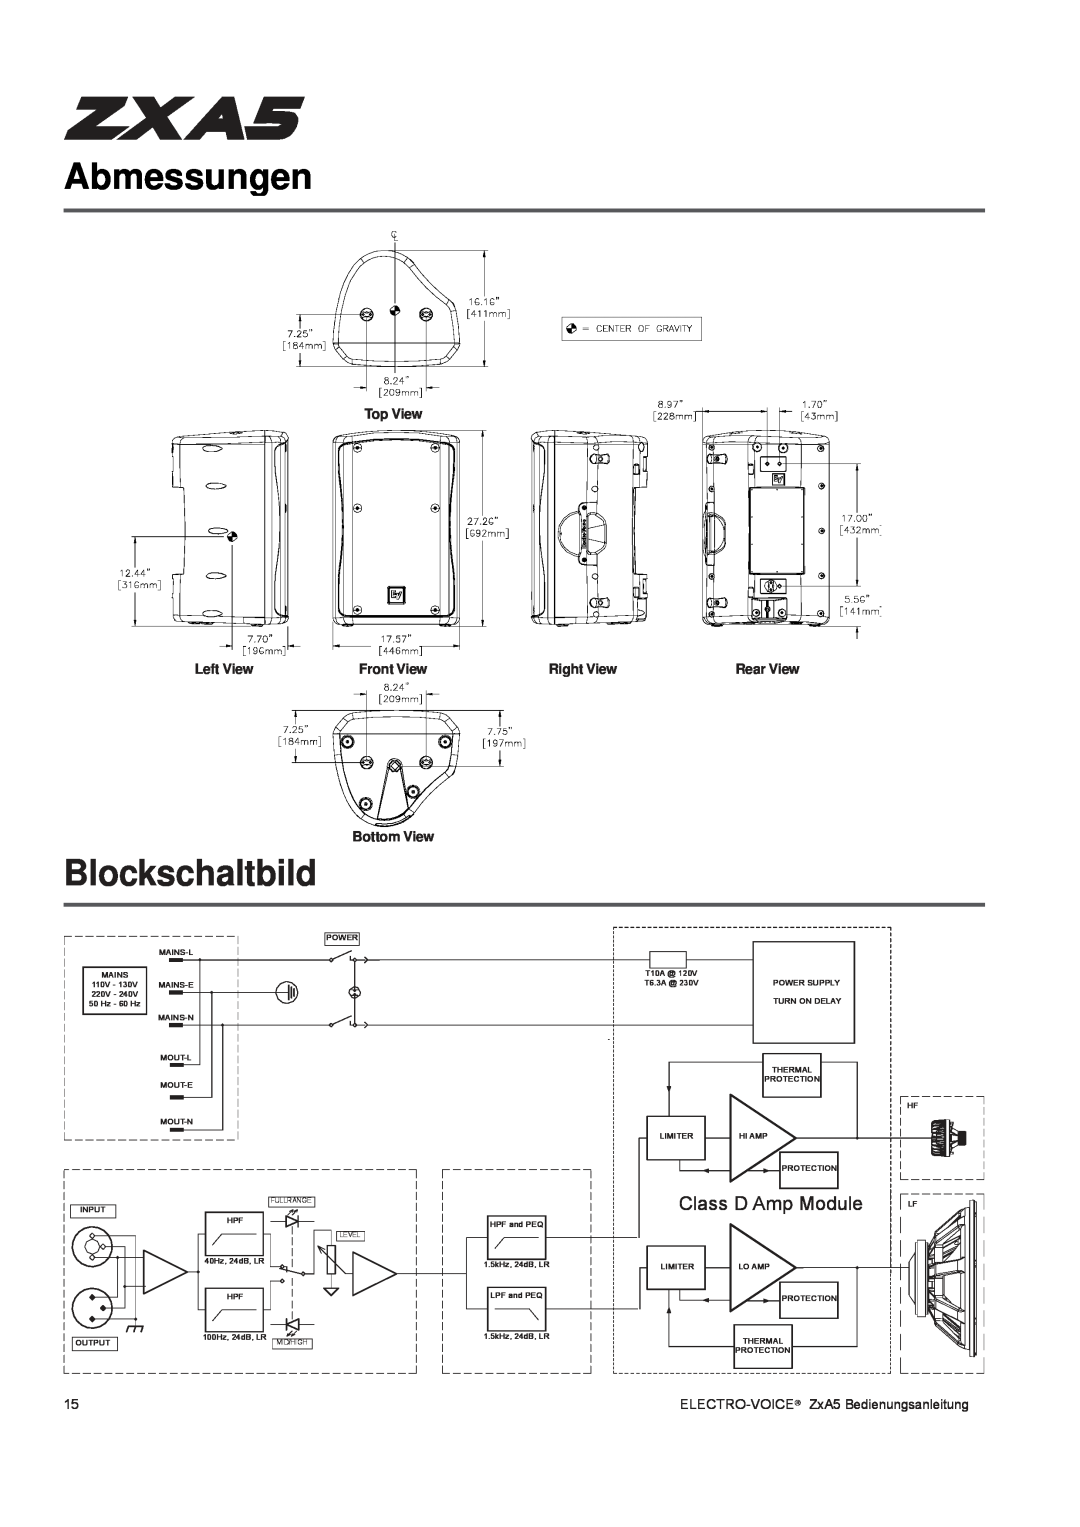 Pentax ZXA5-60 Abmessungen, Blockschaltbild, Class D Amp Module, Top View, Left View, Front View, Right View, Bottom View 